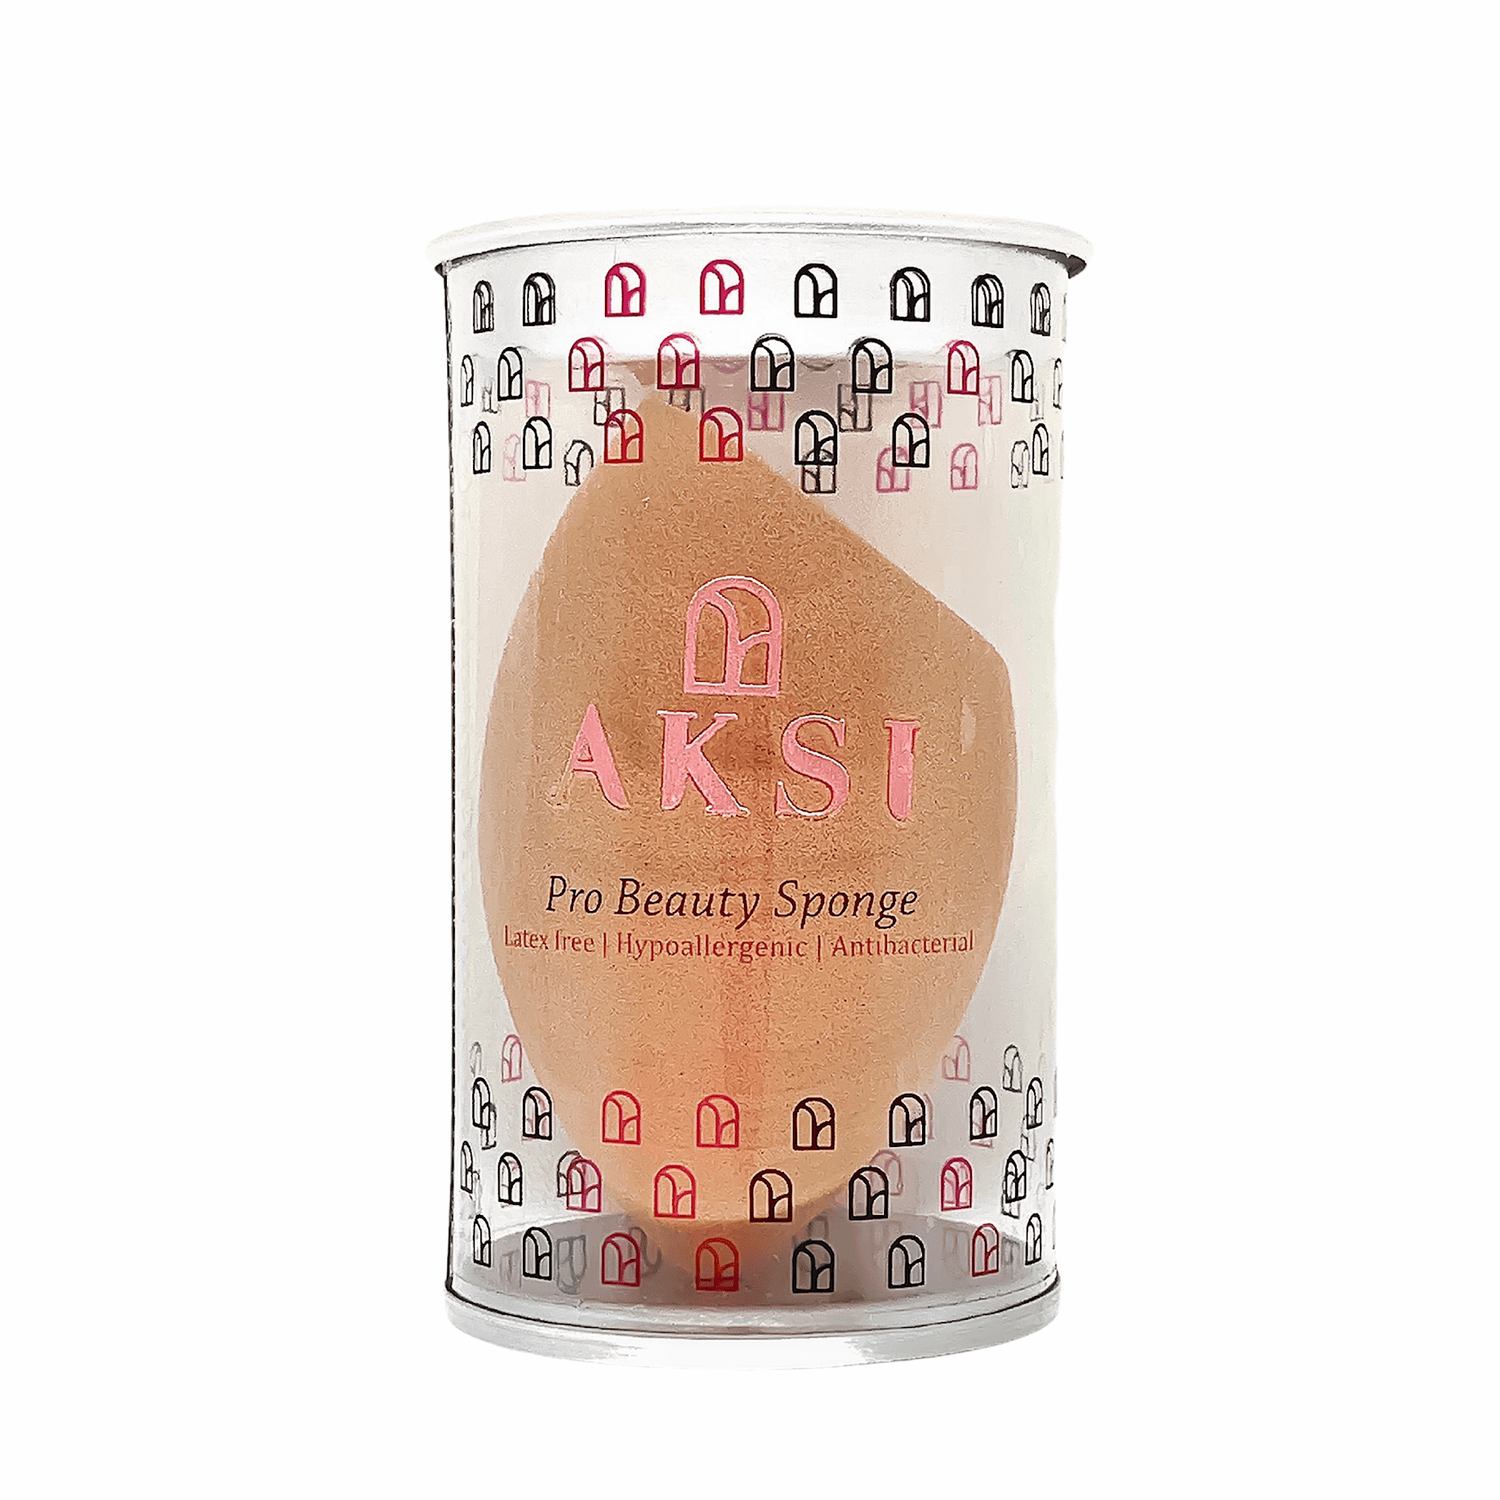 Pro Beauty Sponge (Coffee bean) - AKSI Beauty